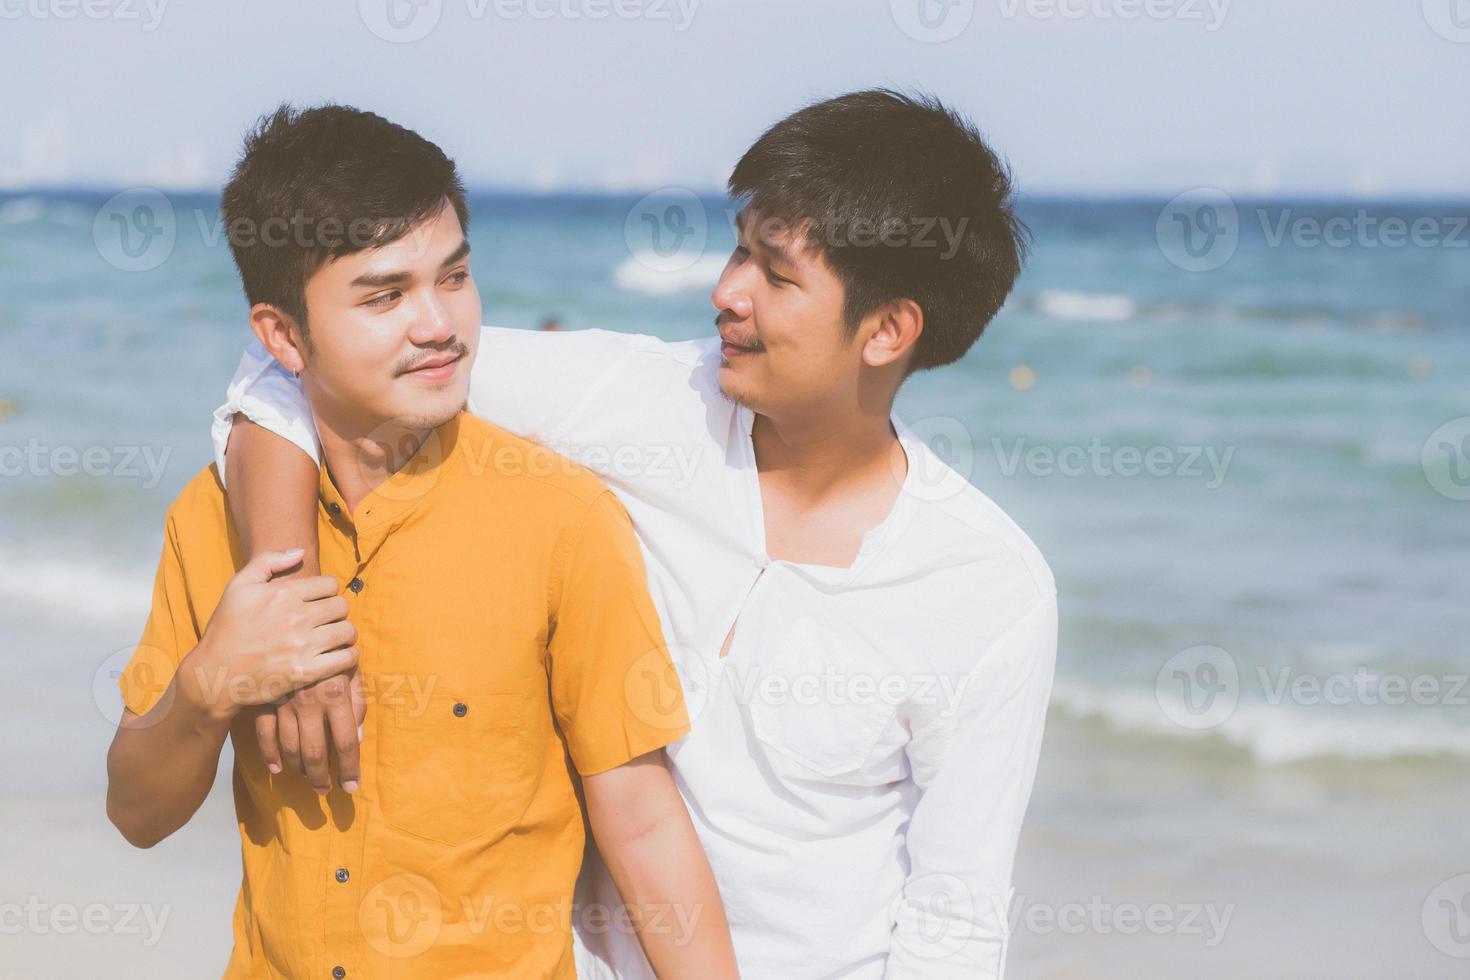 homosexuelles porträt junges asiatisches paar, das im sommer zusammen am strand steht, asien homosexueller tourismus für die freizeit und entspannen sie sich mit romantisch und glück im urlaub auf meer, lgbt-konzept. foto